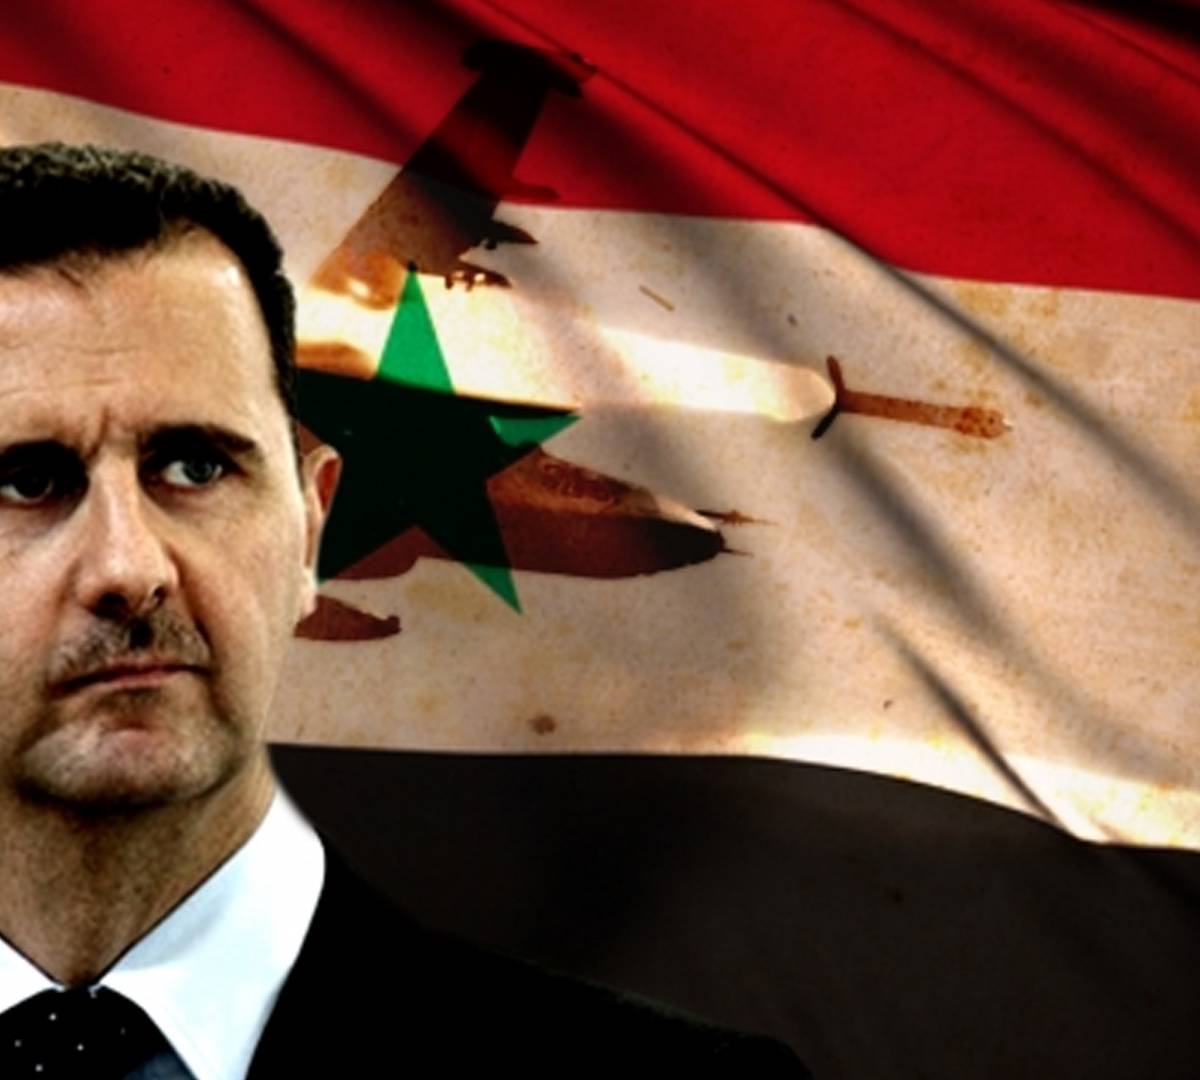 От Хусейна до Асада: почему в Сирии не пройдет иракский сценарий